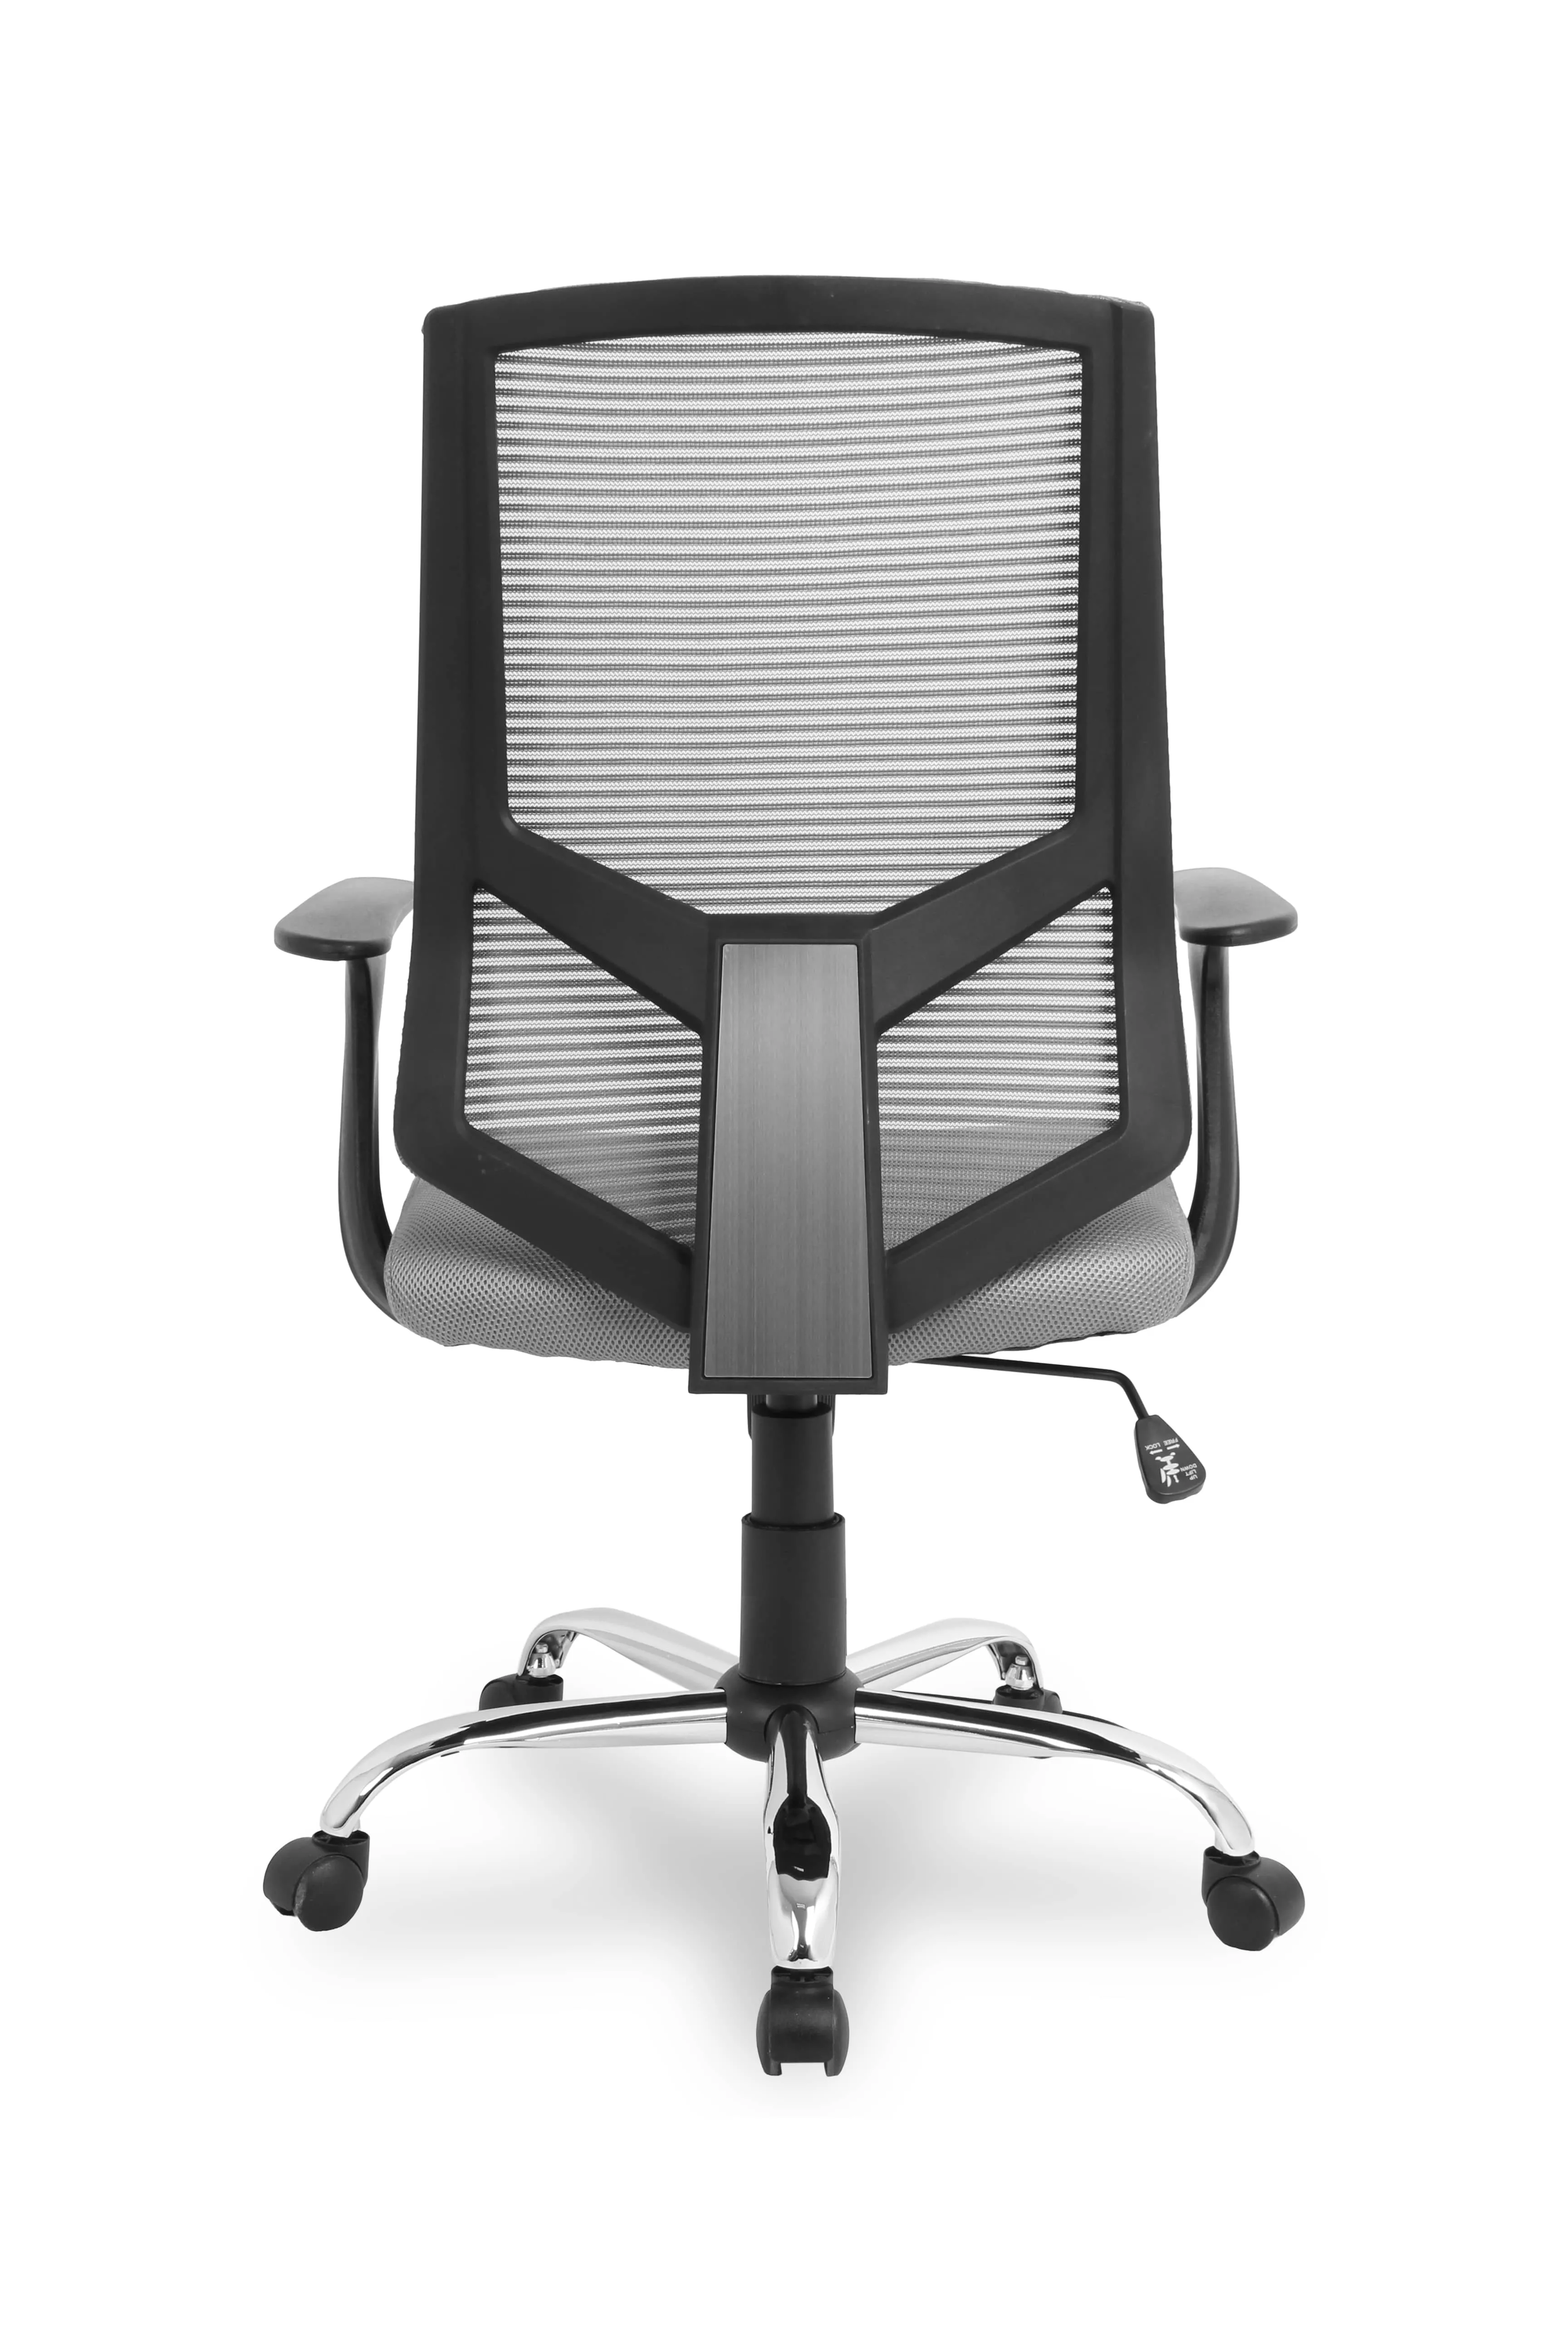 Компьютерное кресло College HLC-1500 Серый